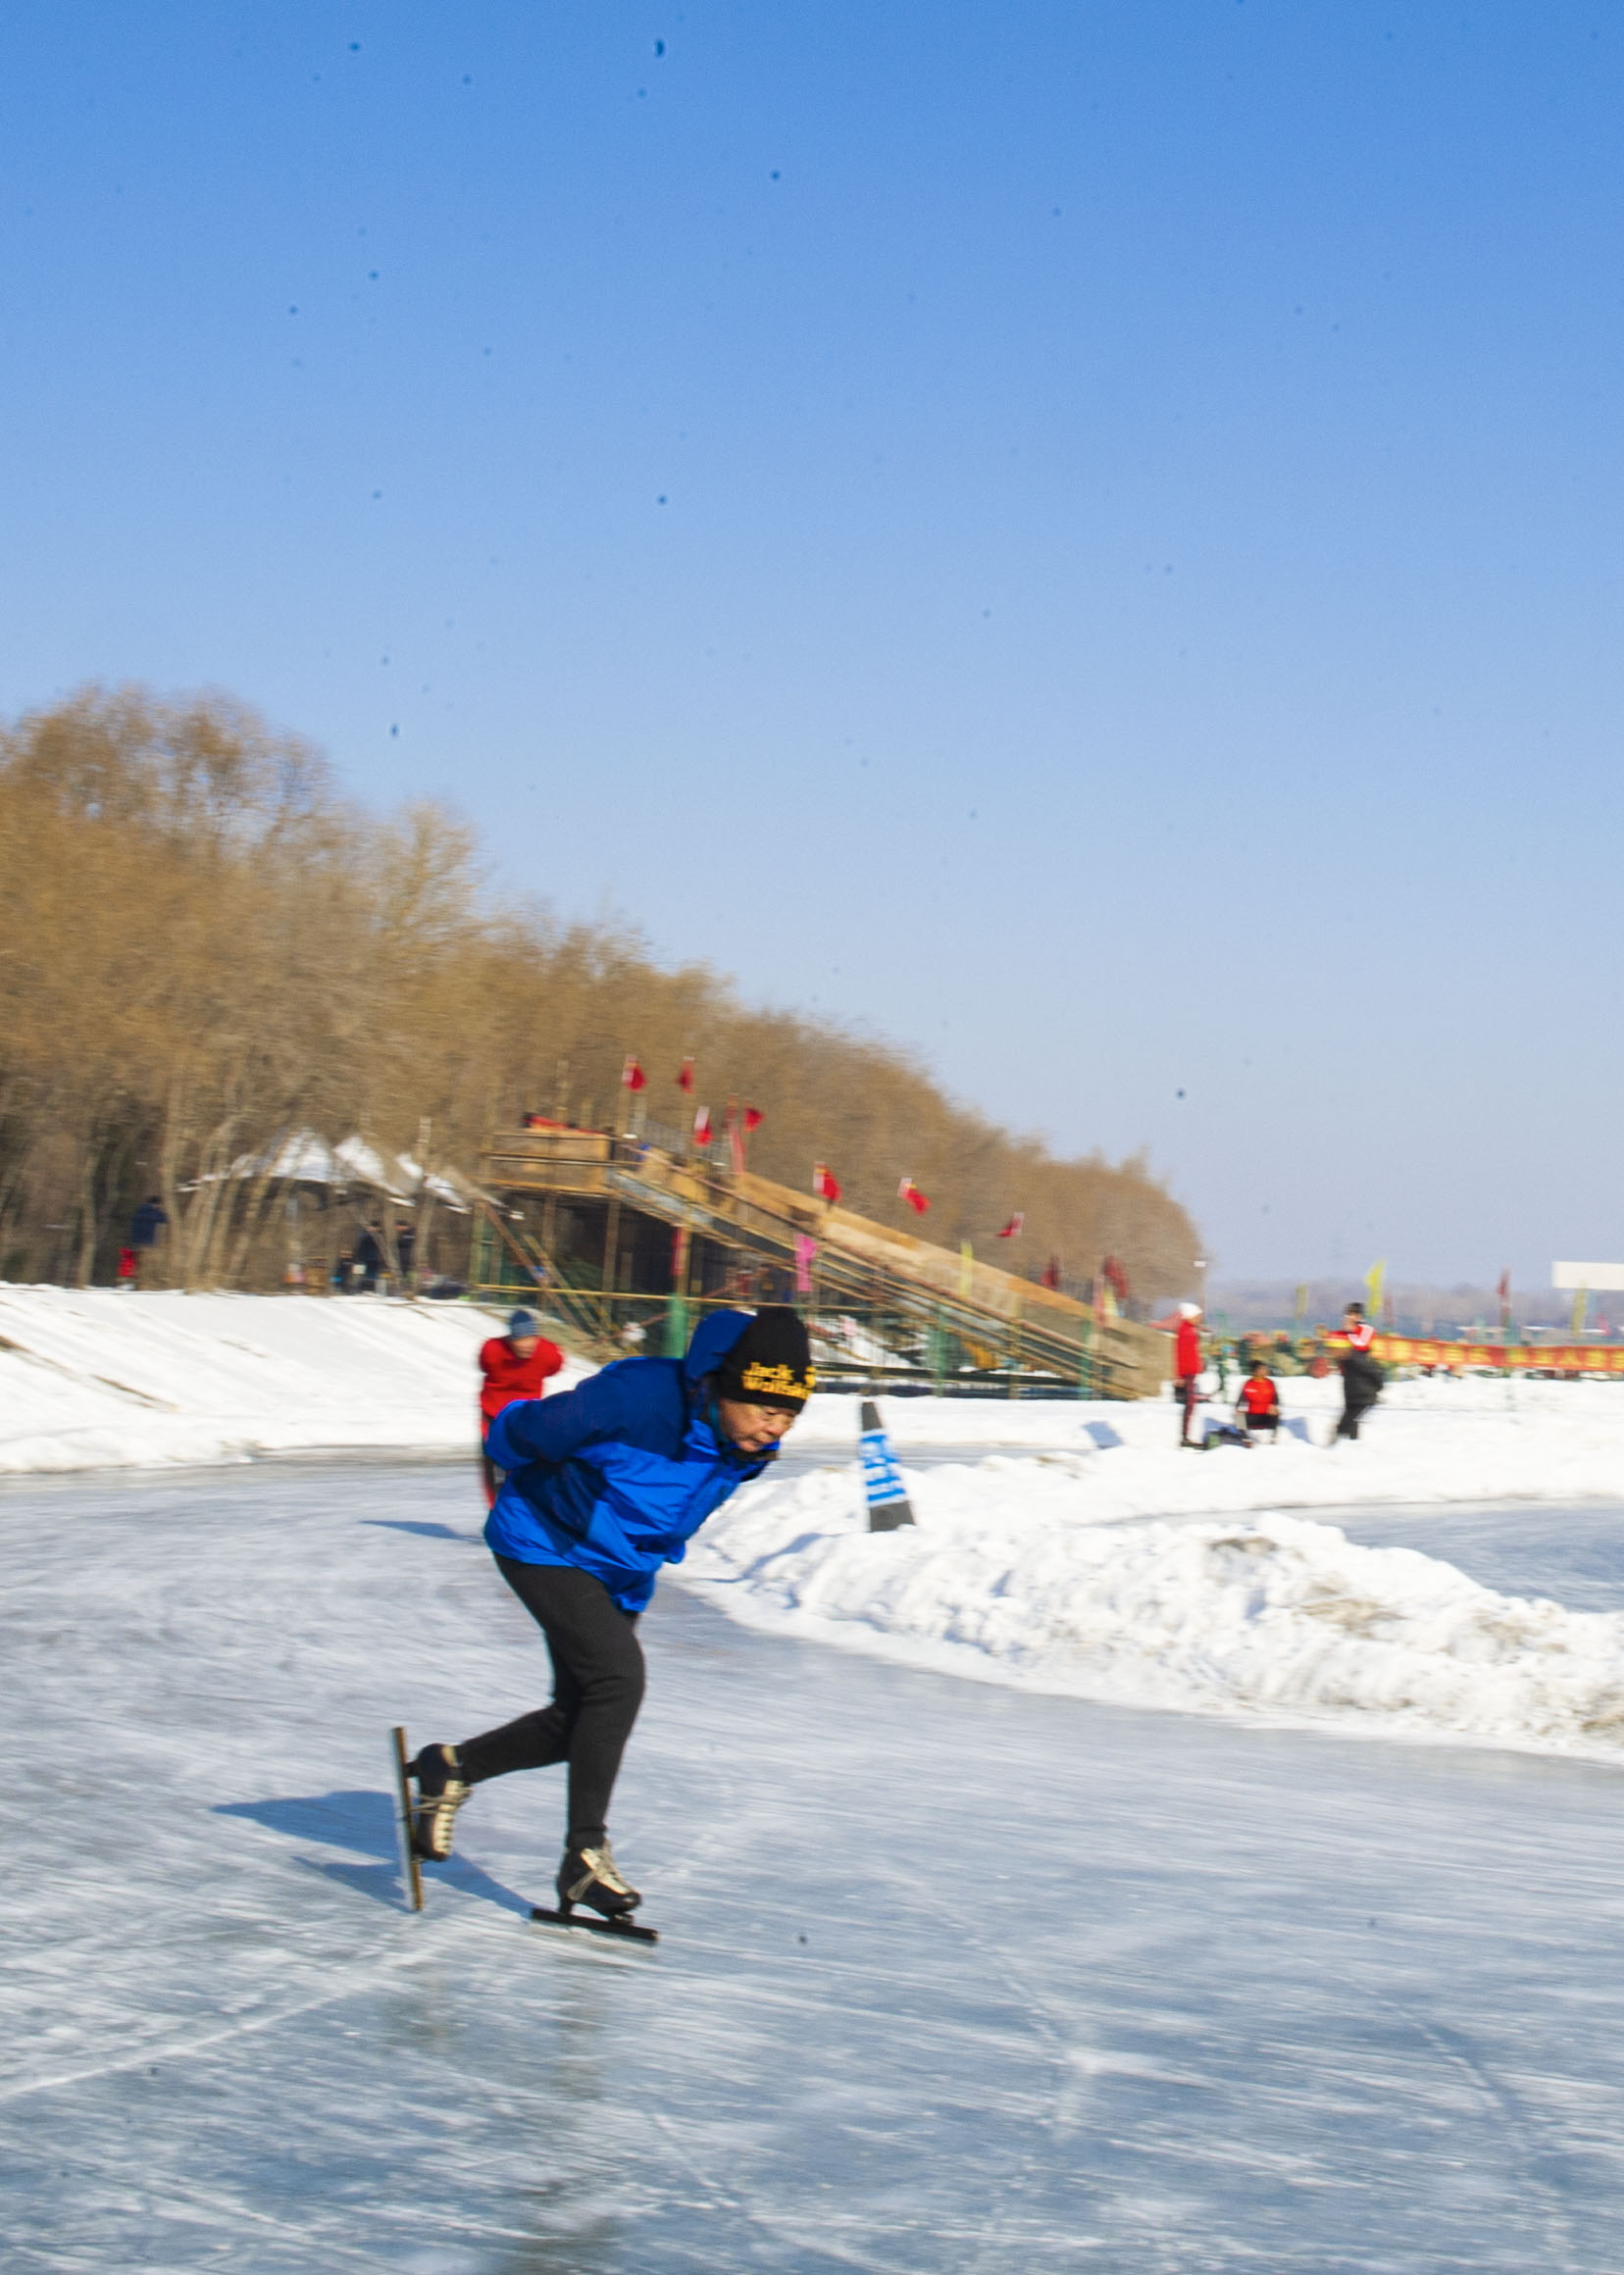 柴河冰场冰面宽敞价格低廉人气旺盛闻名在辽北大地老少皆宜不滑冰可以